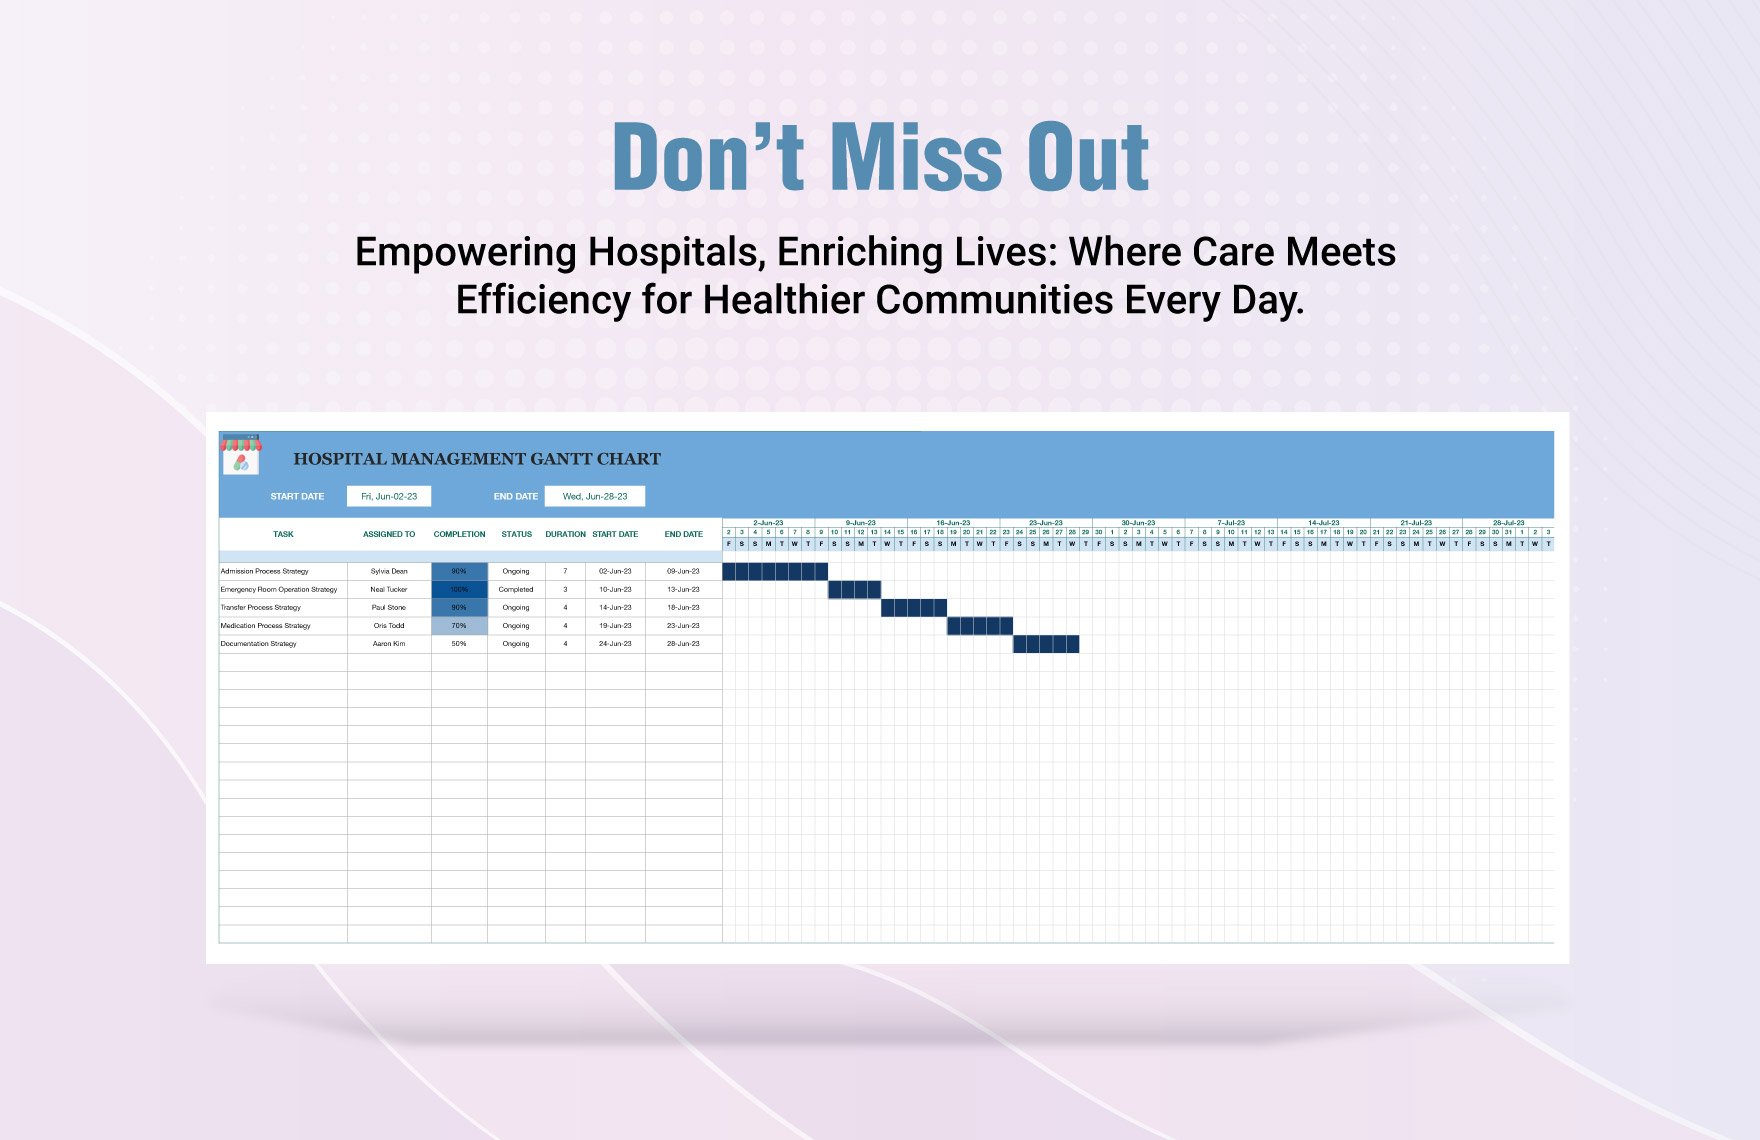 Hospital Management Gantt Chart Template